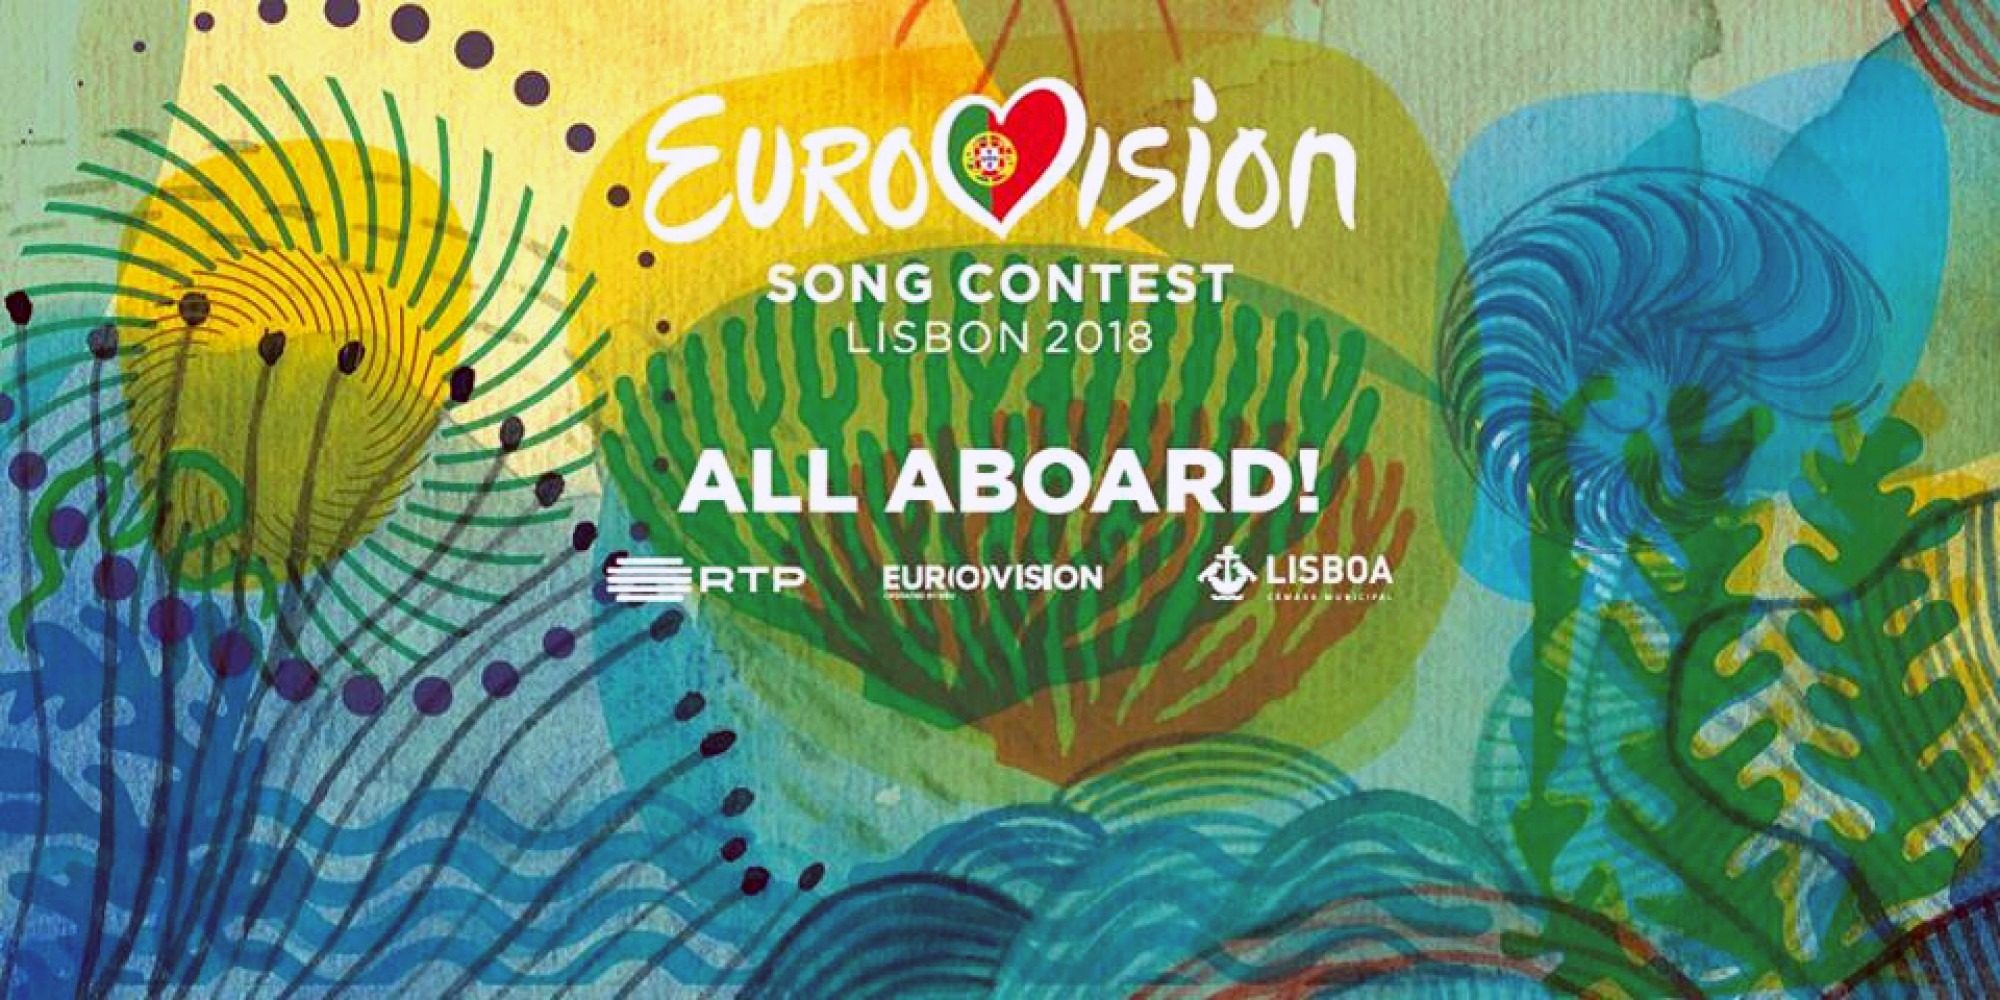 10112017_023243_wsi-imageoptim-eurovision-logo-2018_grande